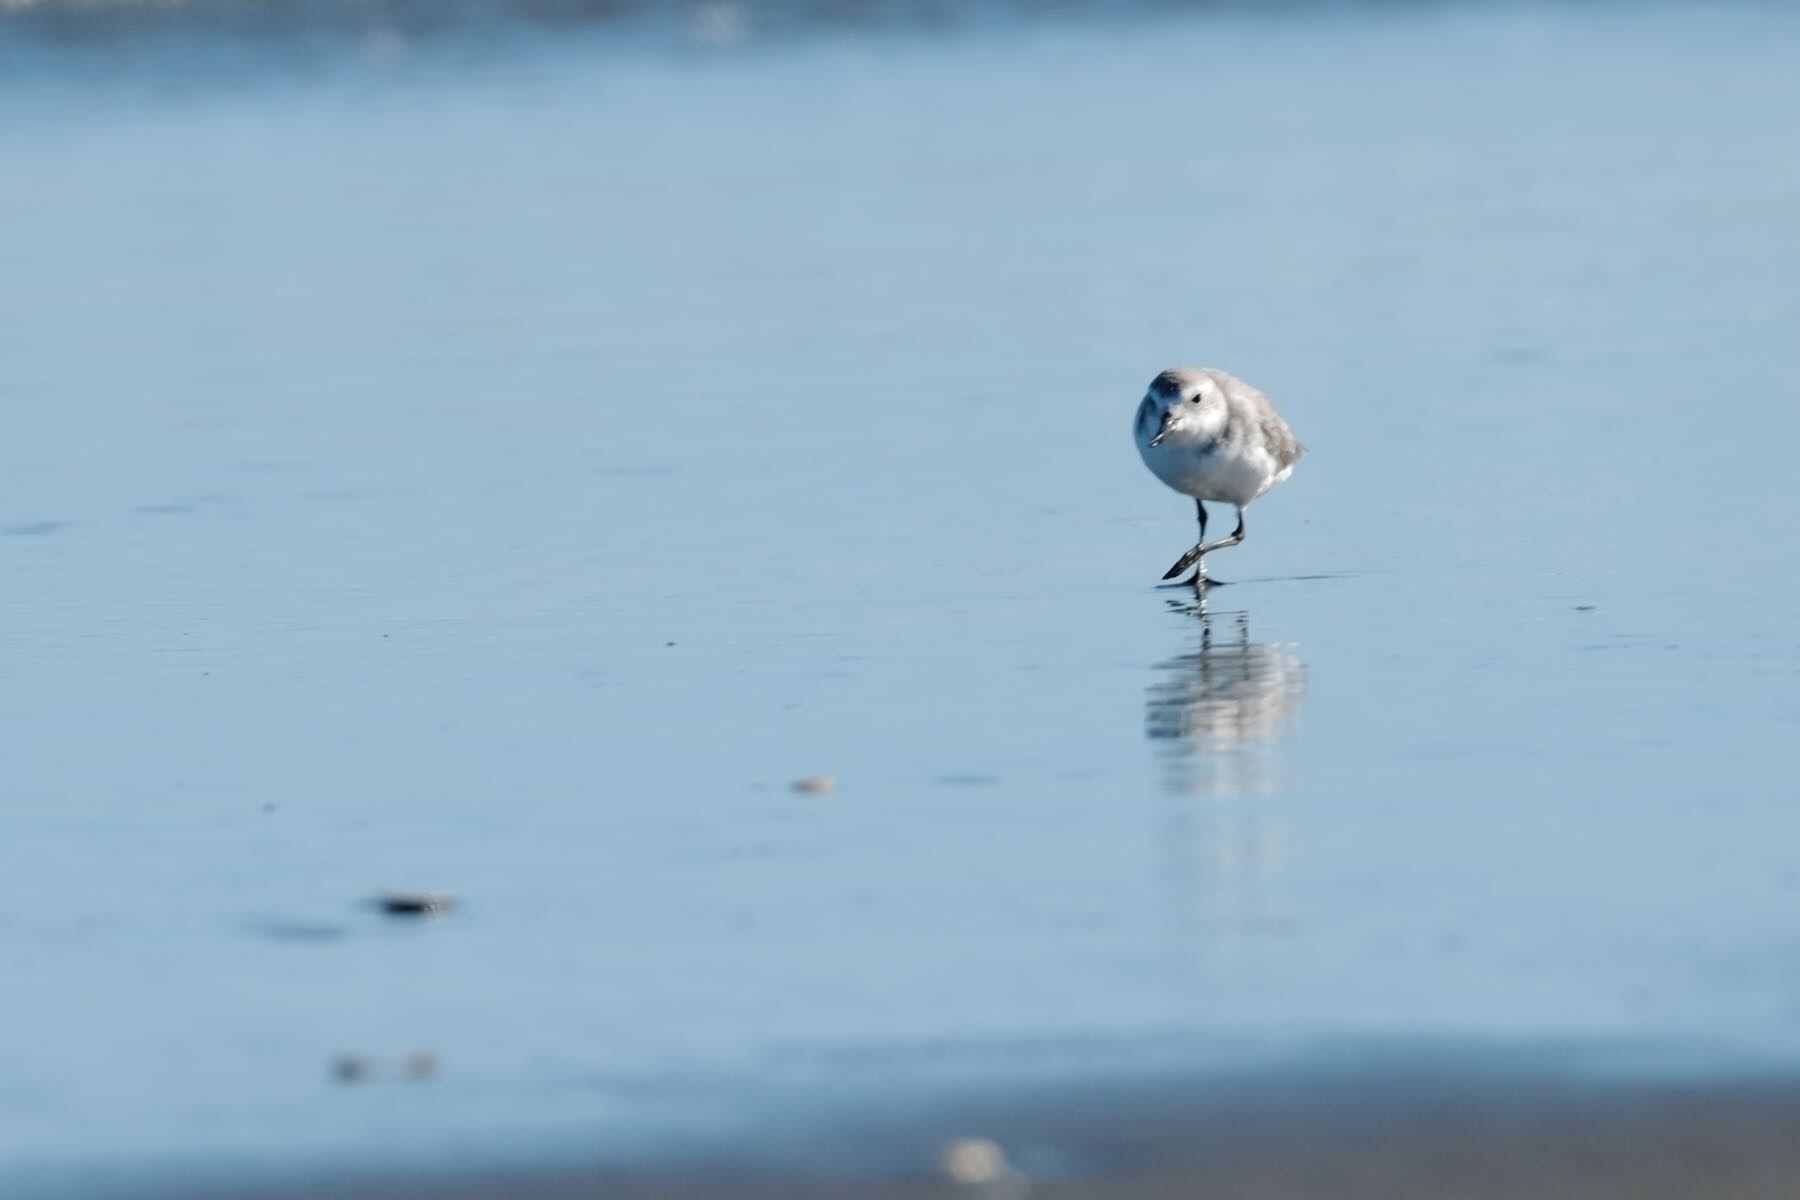 Small bird walking on wet sand. 